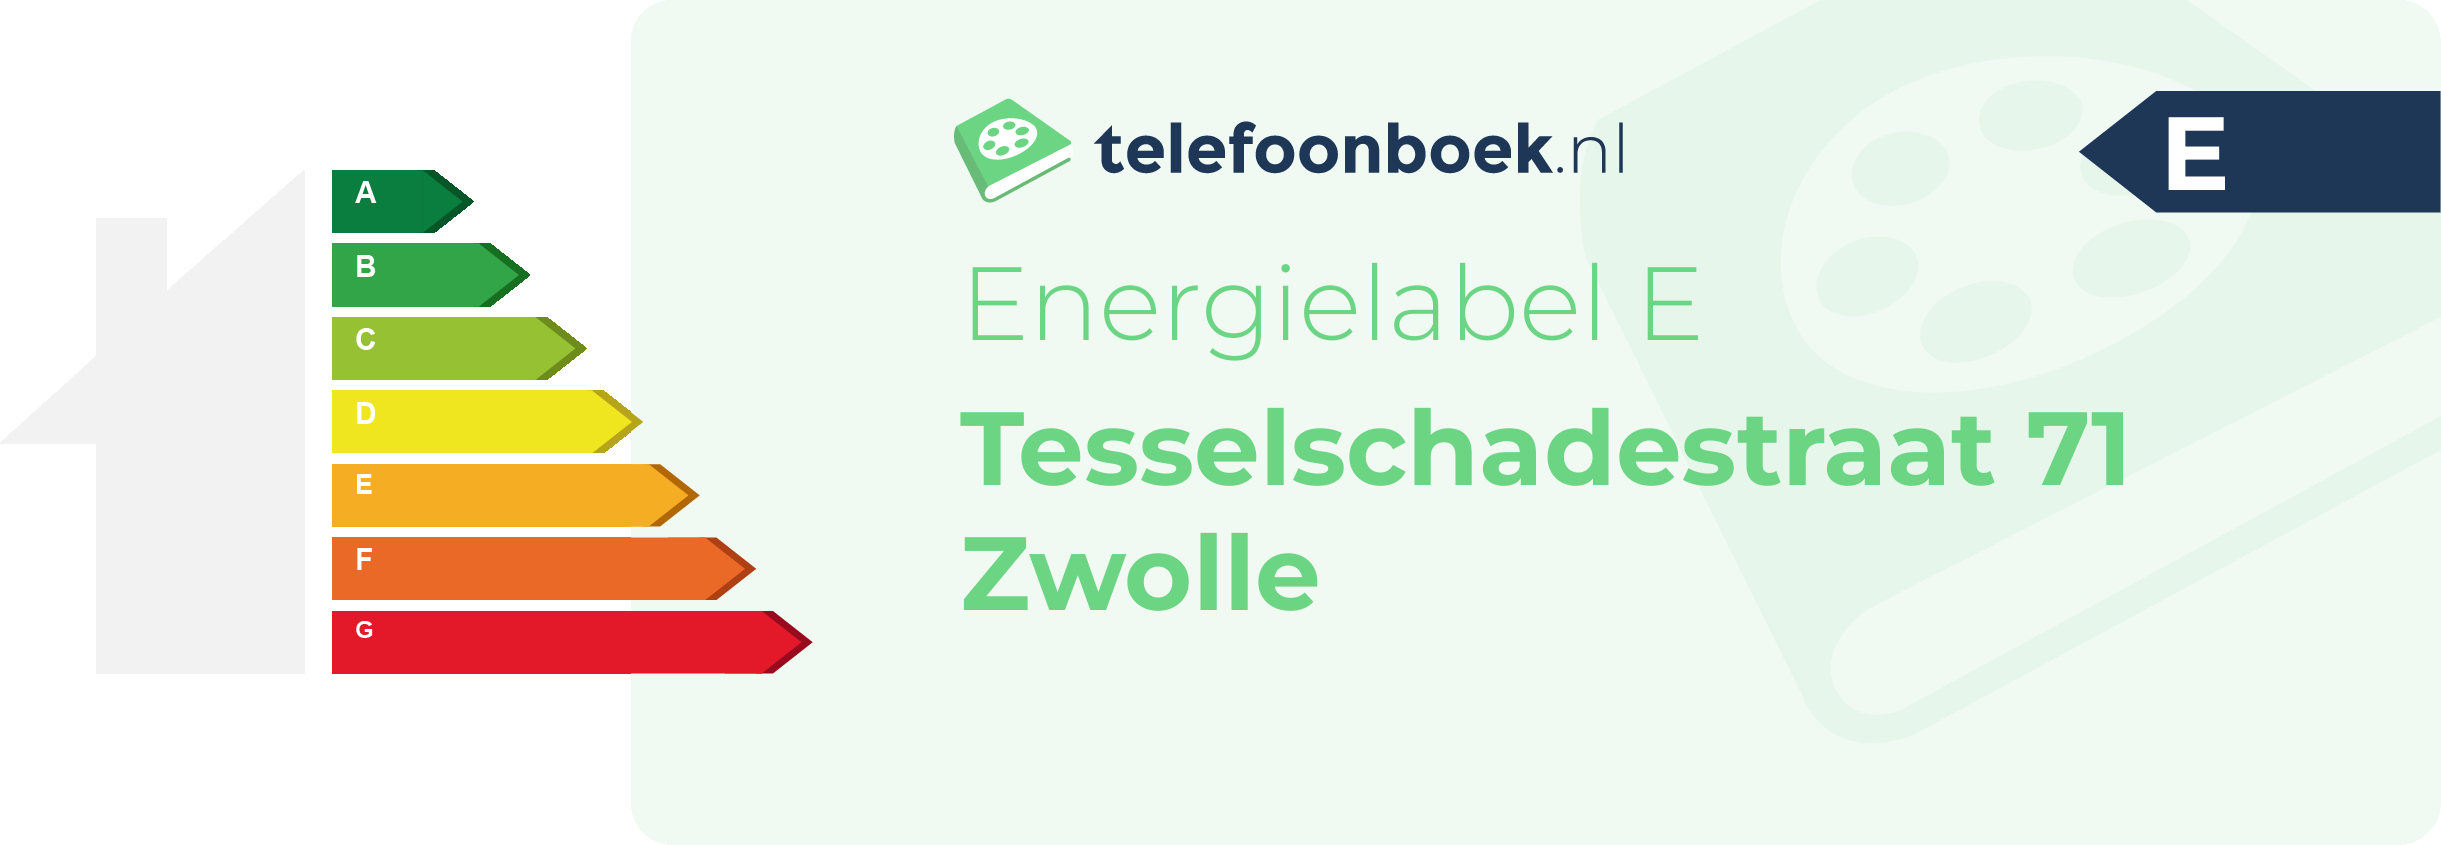 Energielabel Tesselschadestraat 71 Zwolle